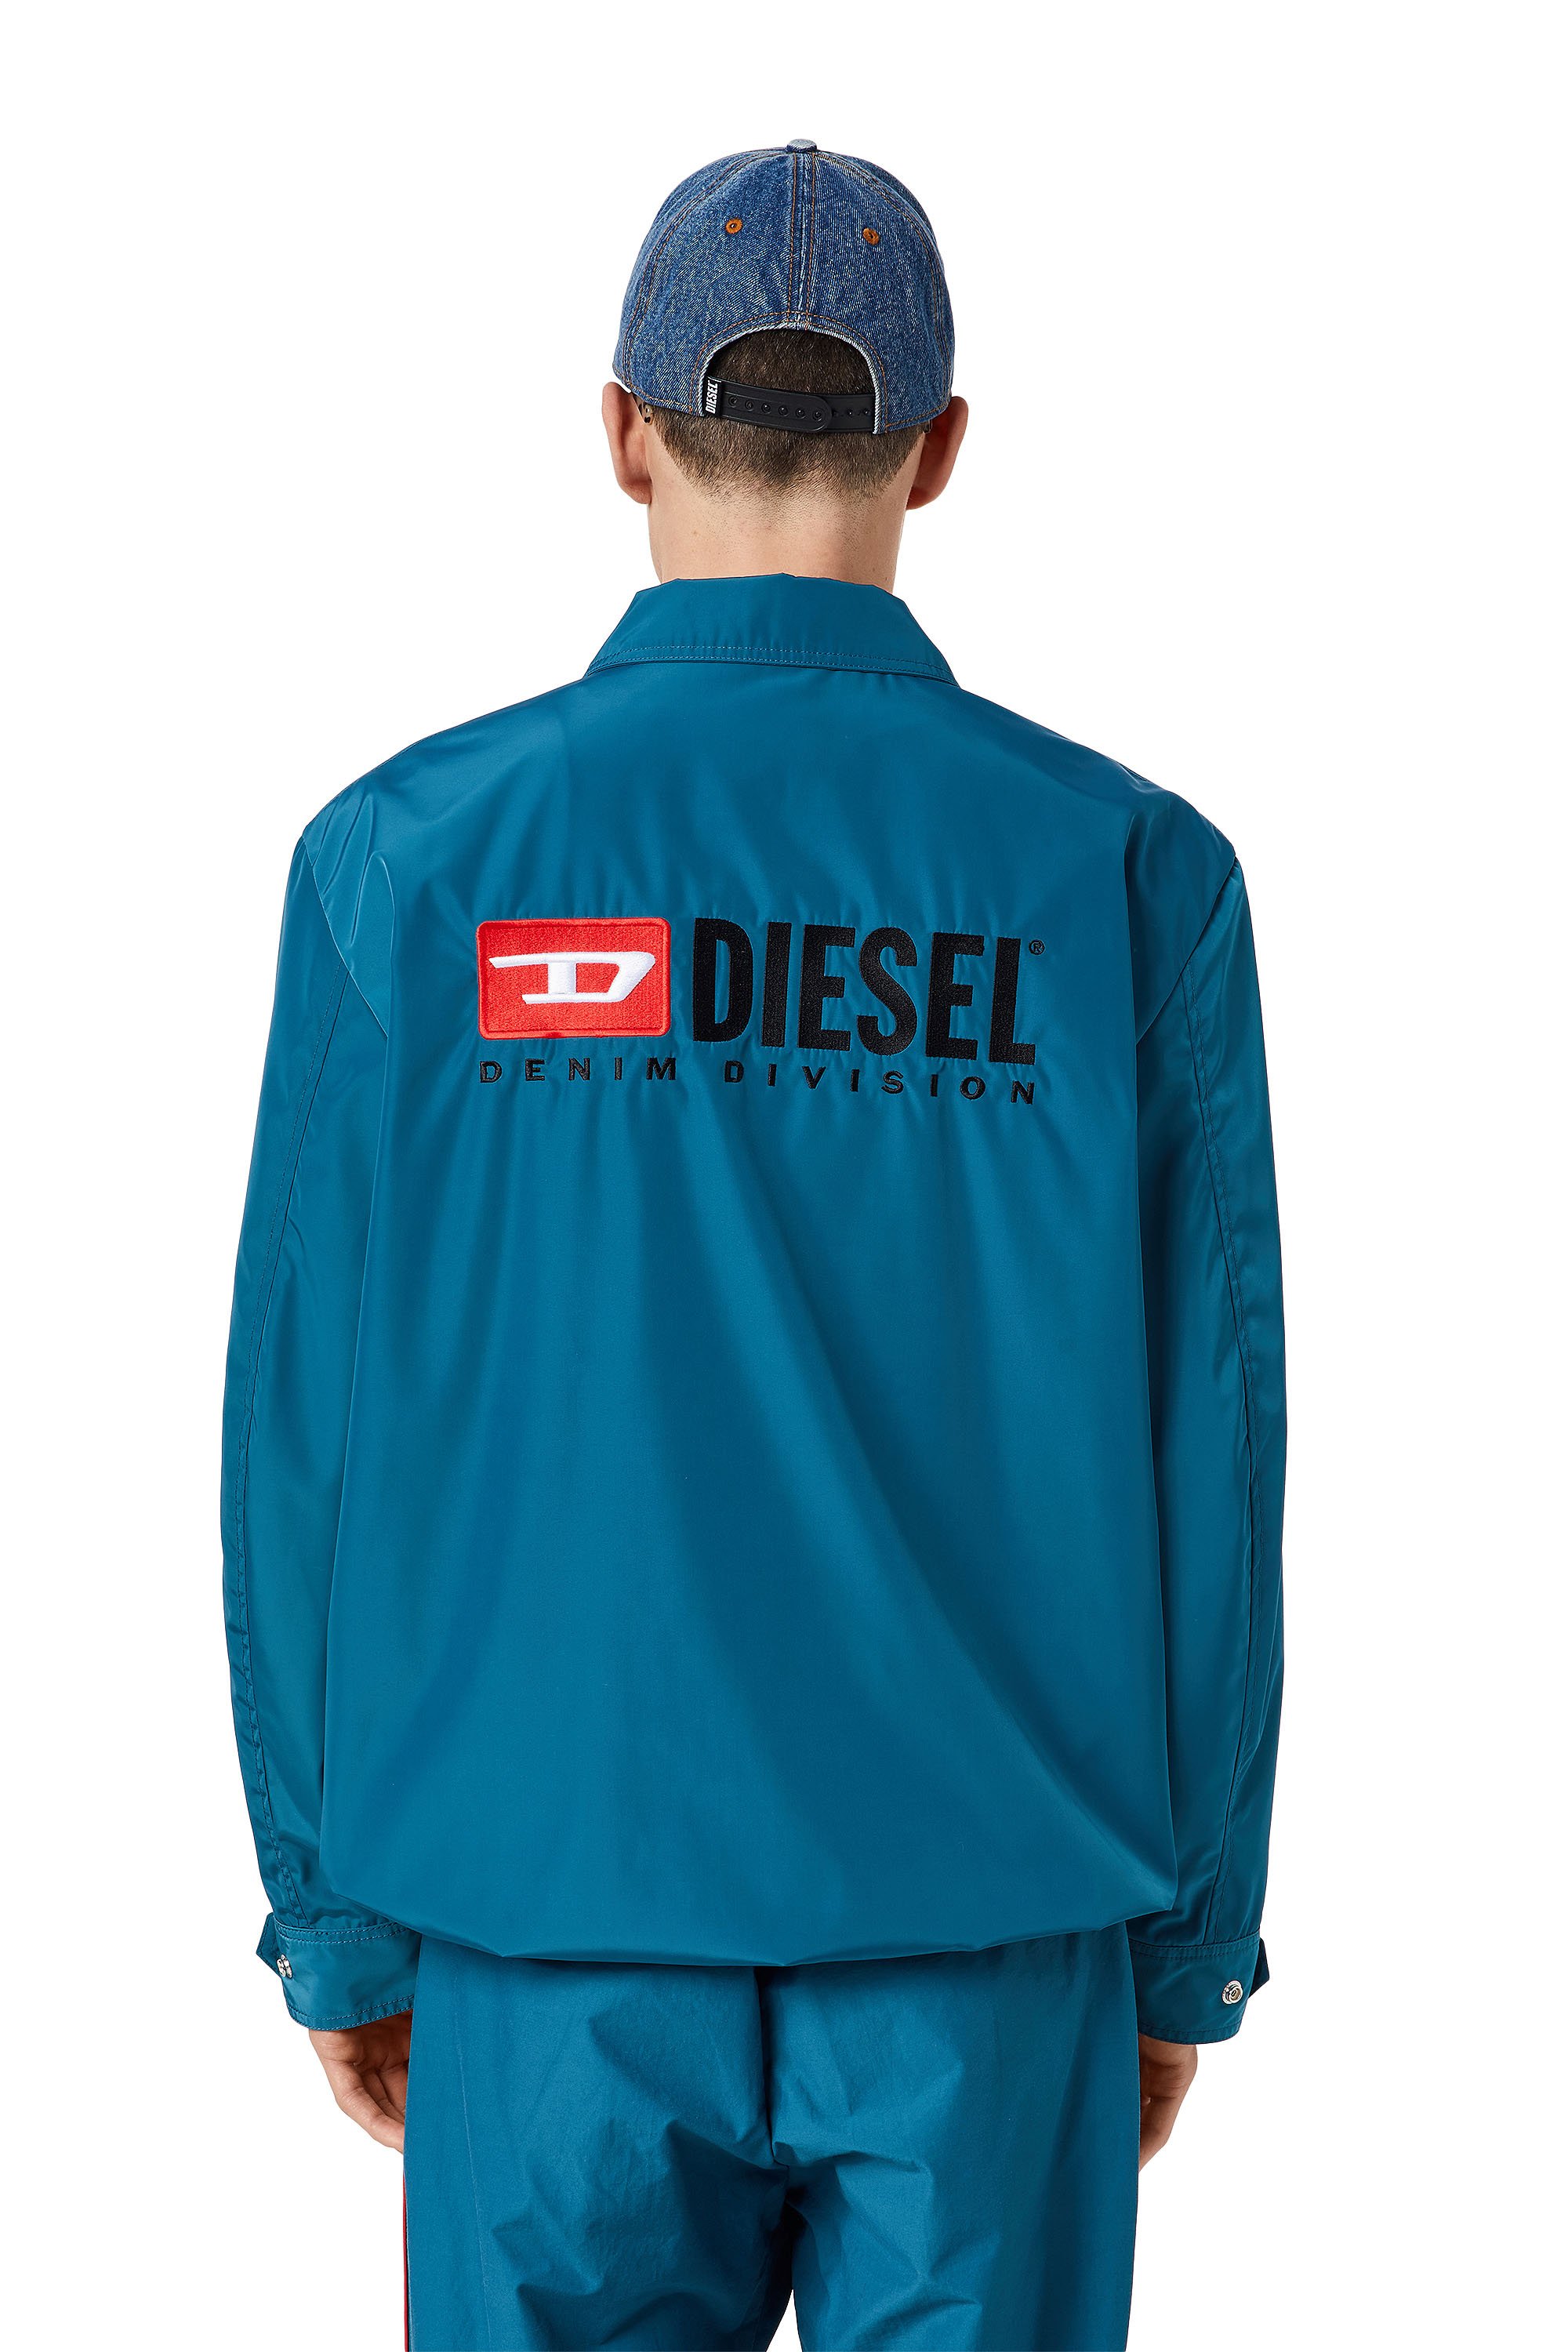 Diesel - J-COAL-NP, Blau - Image 3